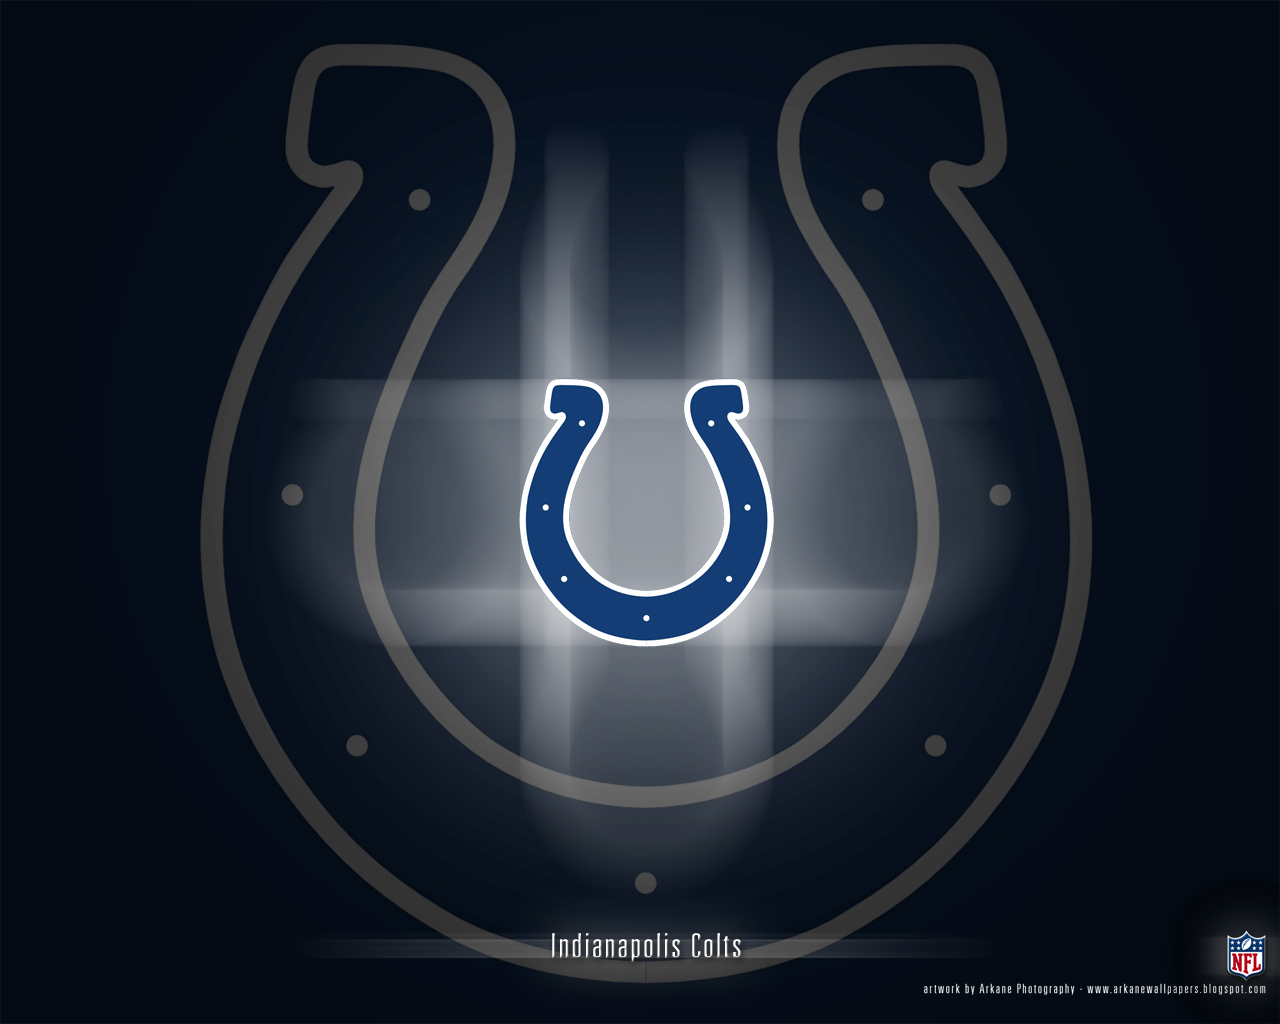 Indianapolis Colts Football Season Indy Homes Real